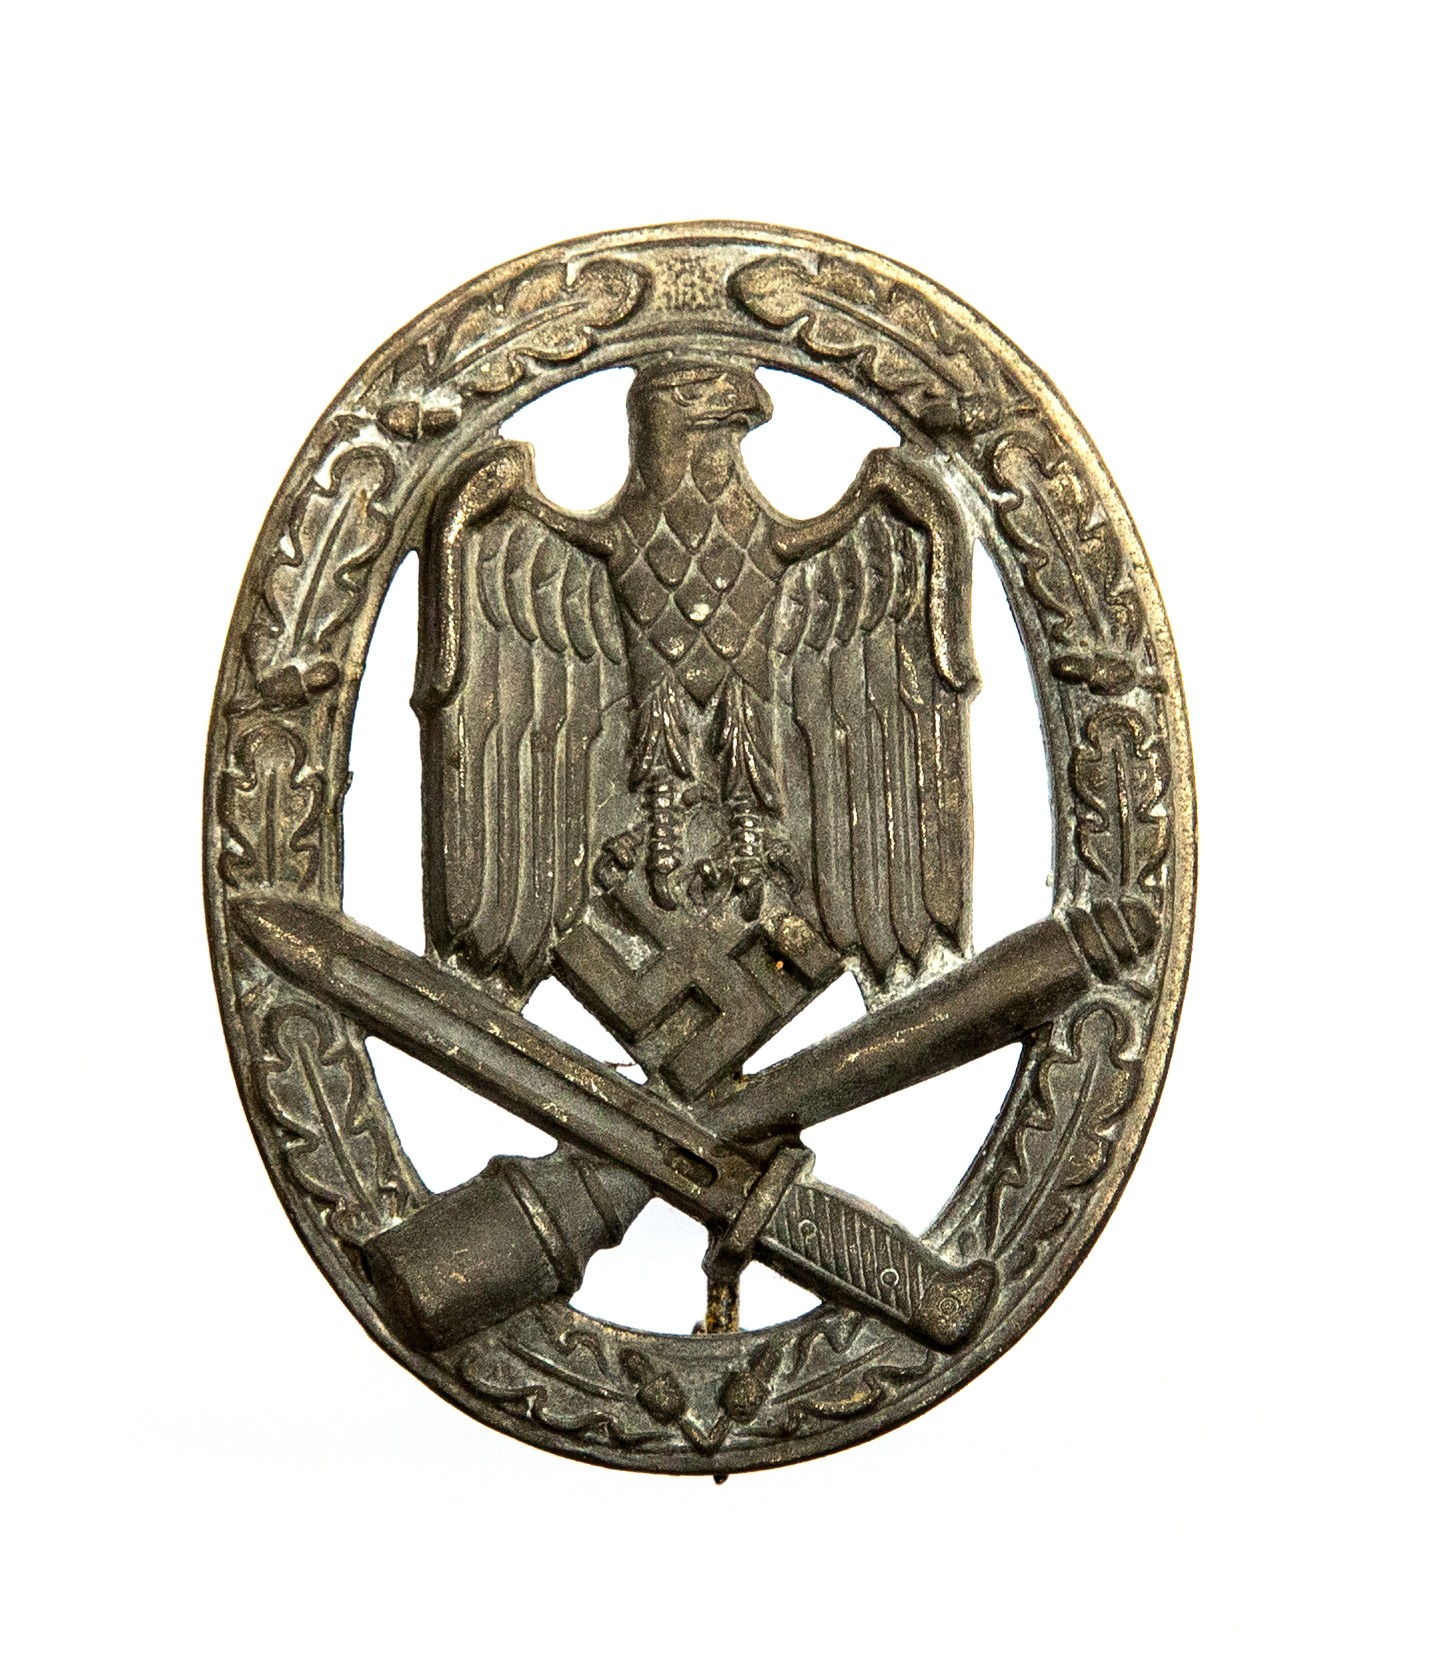 WW2 Third Reich Allgemeines Sturmabzeichen - General Assault Badge. Zink, unmarked.